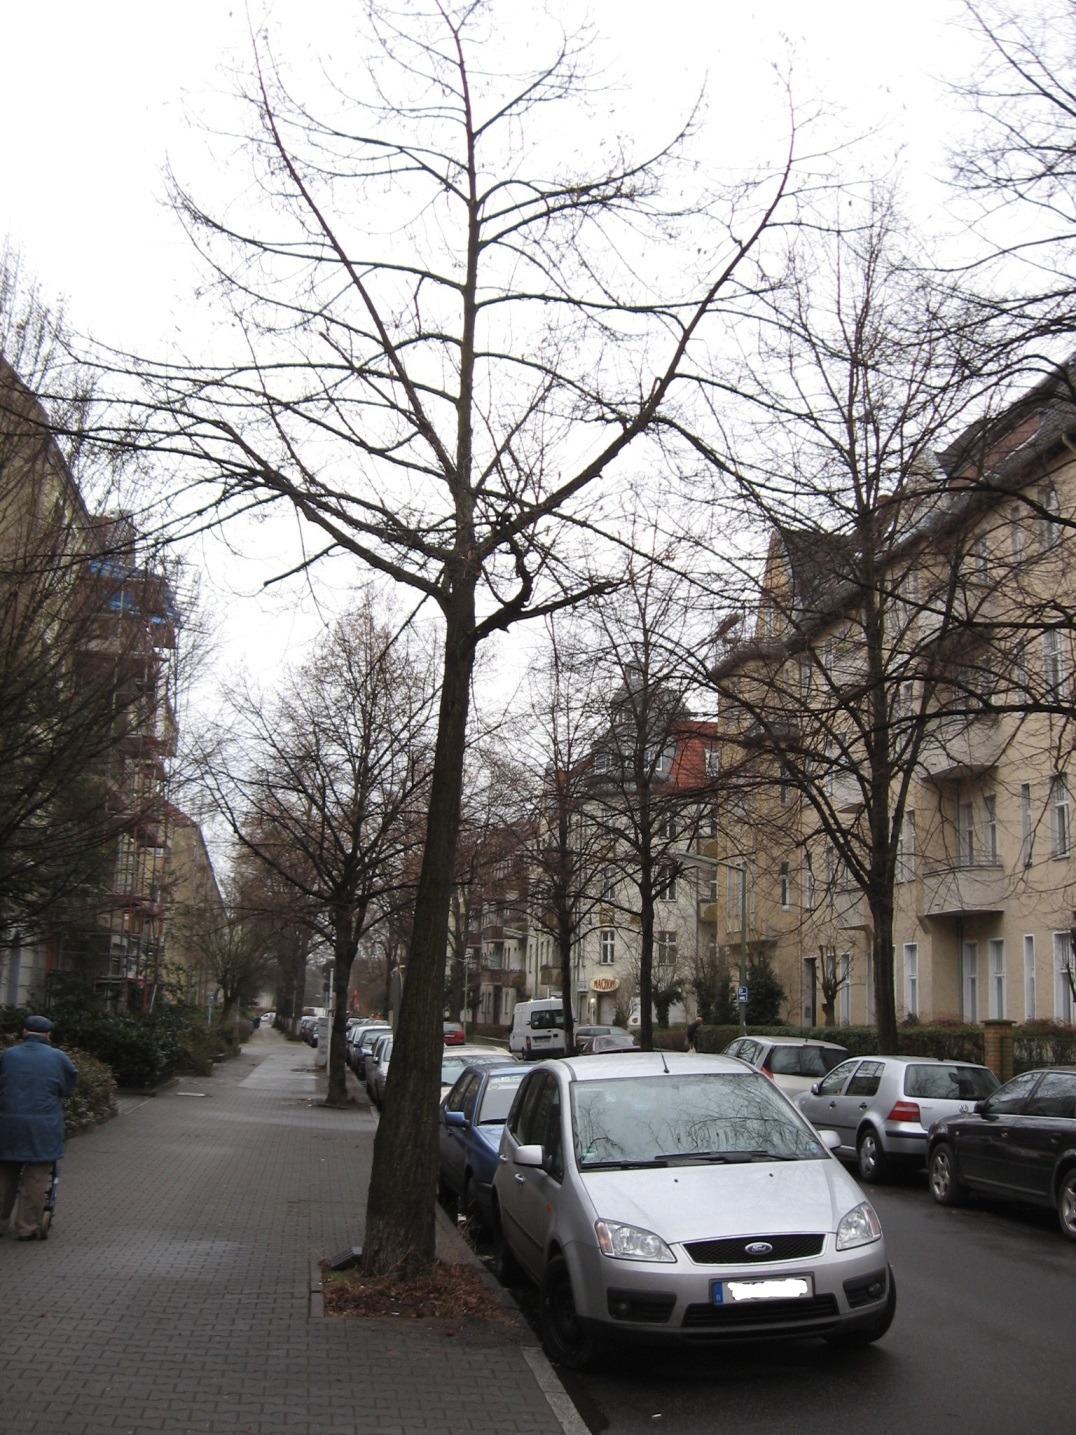 Baum in einer kleineren Straße